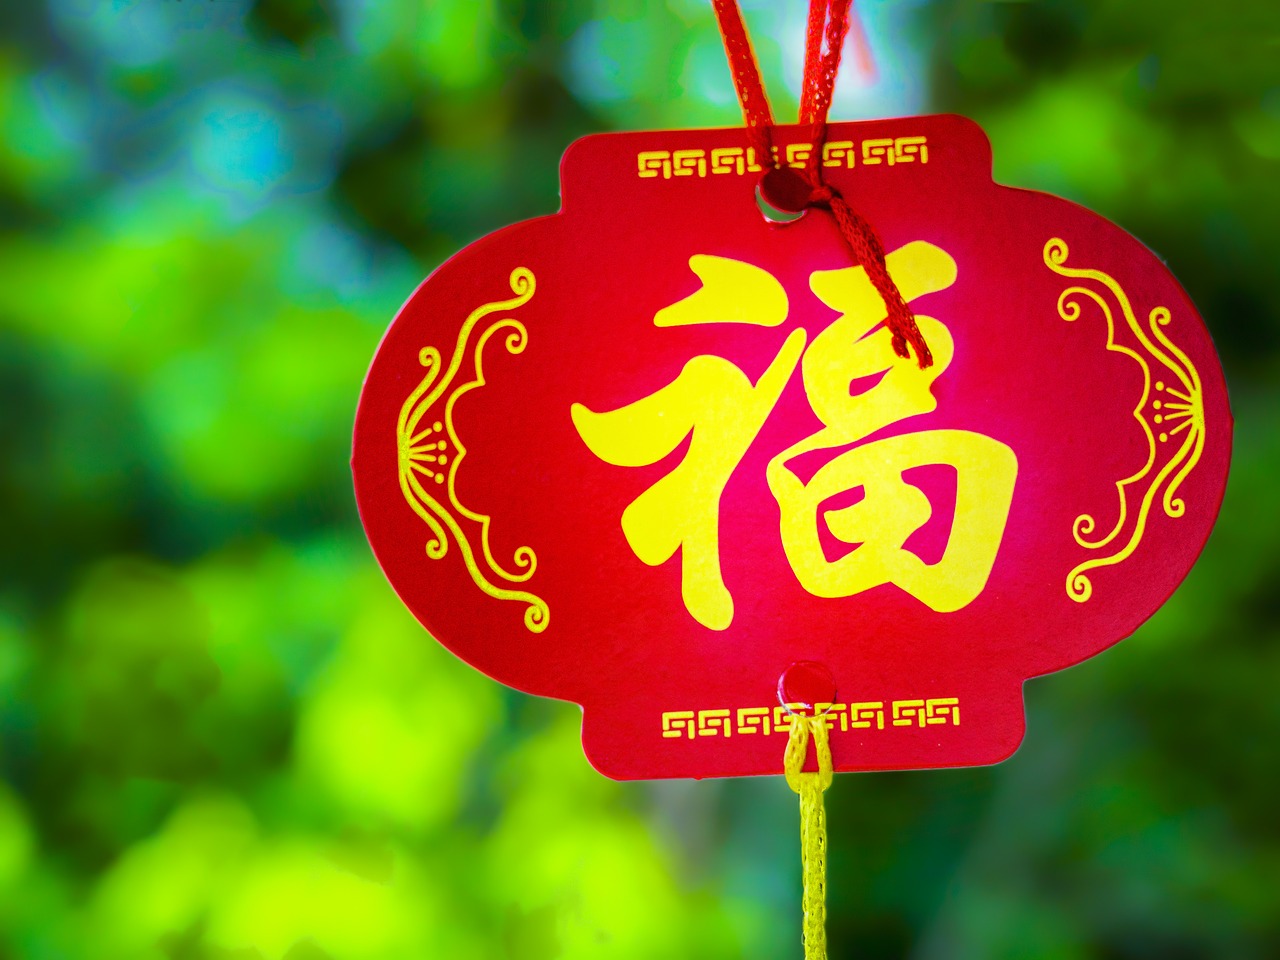 Kinų Naujieji Metai, Palaiminimas, Šventė, Rytietiškas, Kultūra, Tradicinis, Naujieji Metai, Festivalis, Mėnulis, Kinija